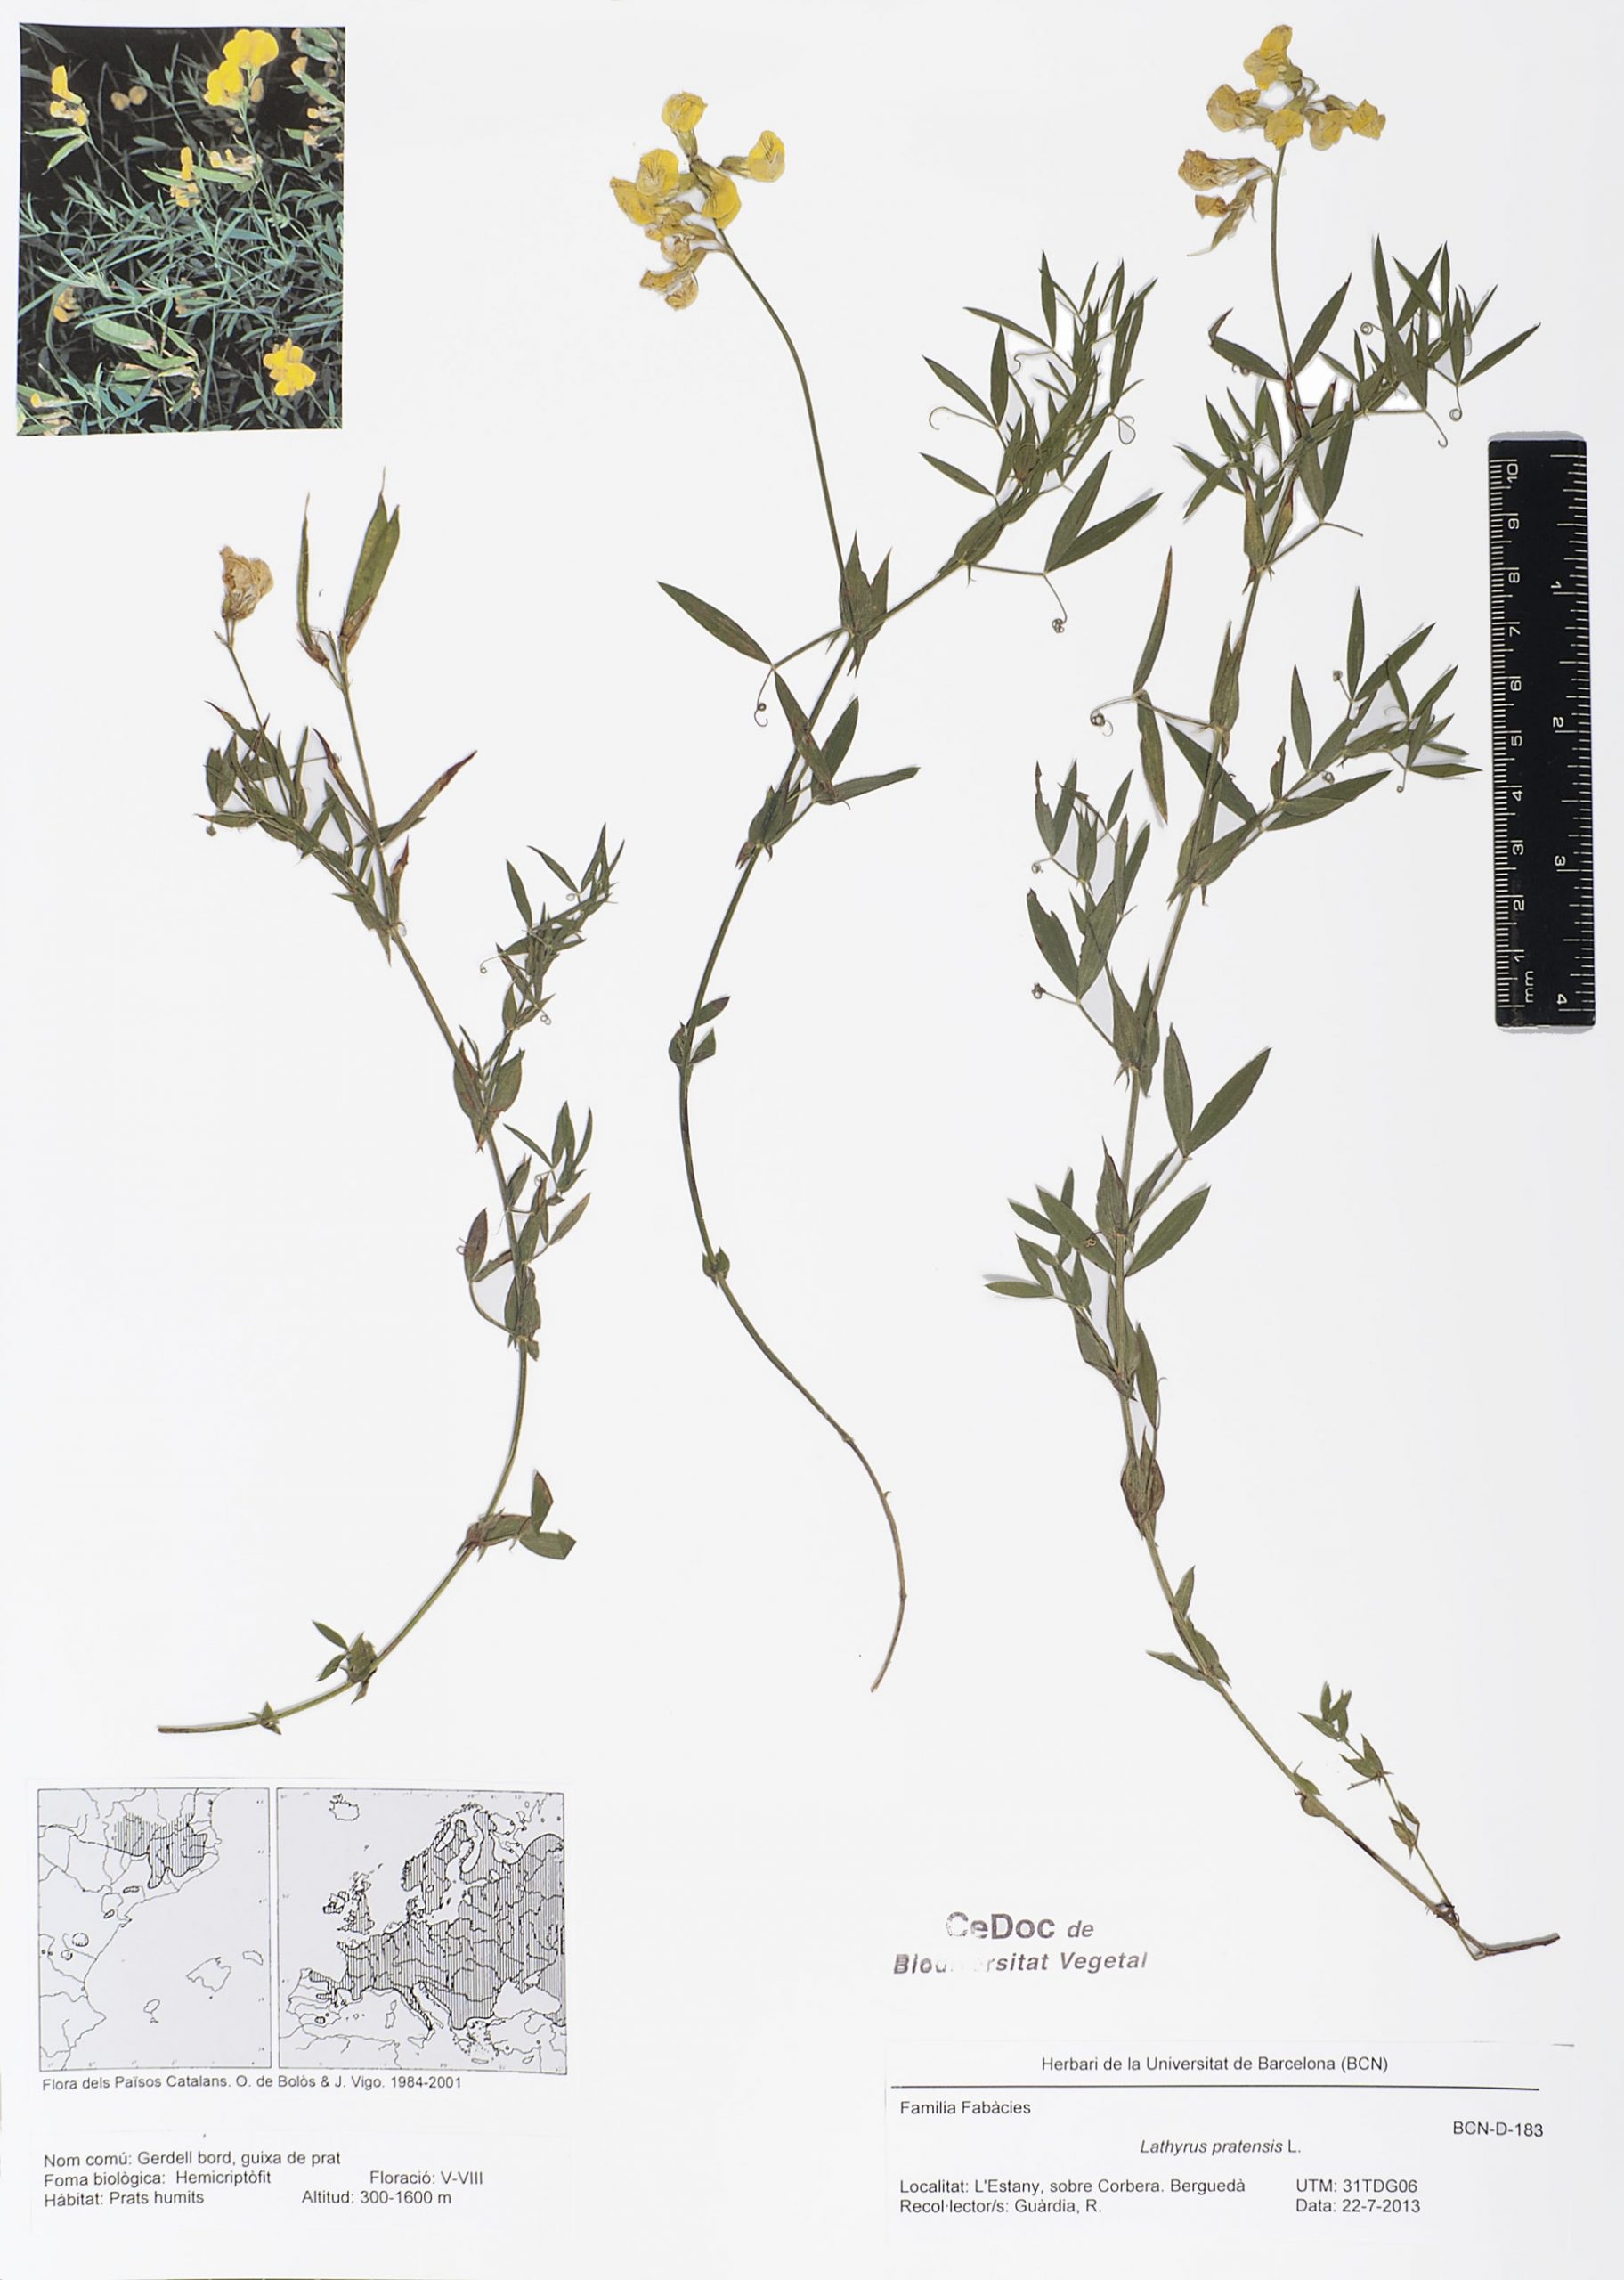 Lathyrus pratensis L. (Gerdell bord, Guixa de prat
guixa de prat 

gerdell bord, guixa de prat, guixeta, guixó de prat)